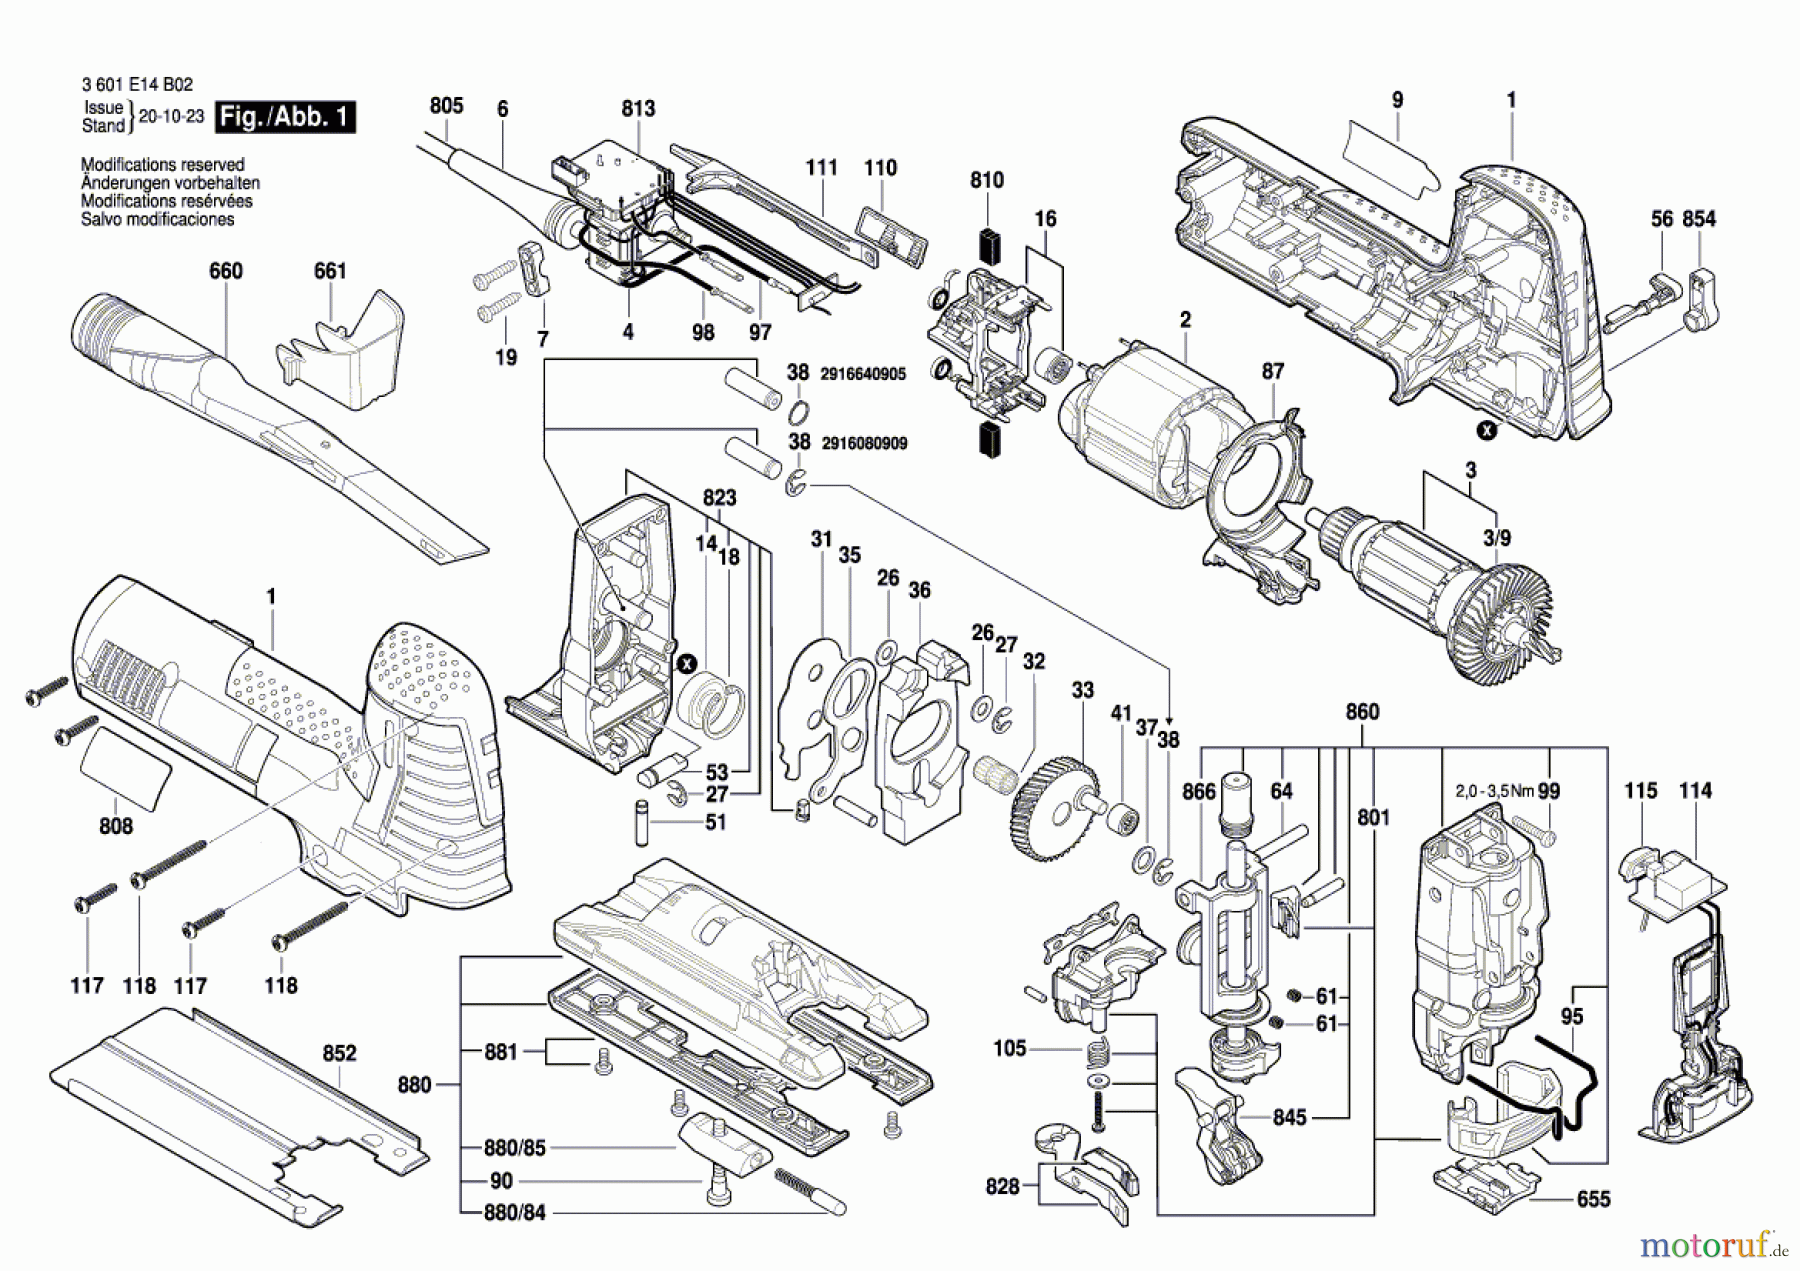  Bosch Werkzeug Pendelstichsäge BJS SHO 160 Seite 1